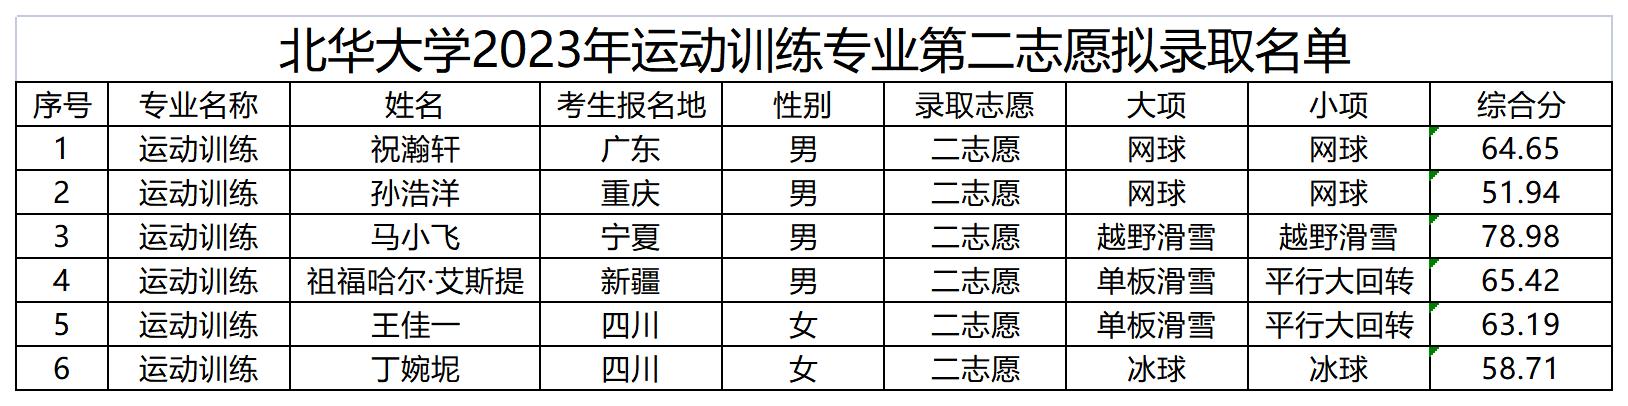 北華大學2023年運動訓練專業第二志愿擬錄取名單_Sheet1.jpg